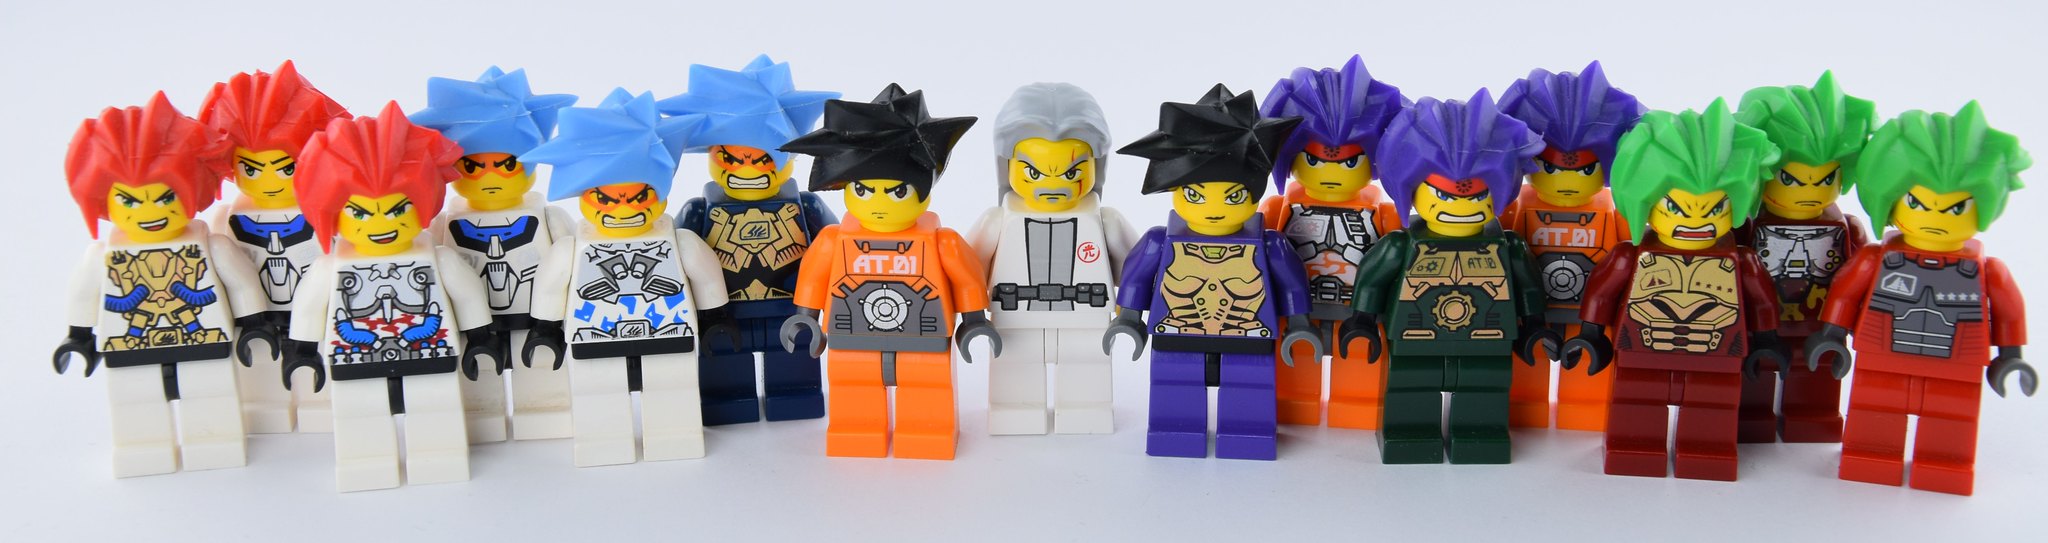 sådan fællesskab Forskelsbehandling Lego Exo-Force complete team | All Exo-Force minifigures wit… | Flickr